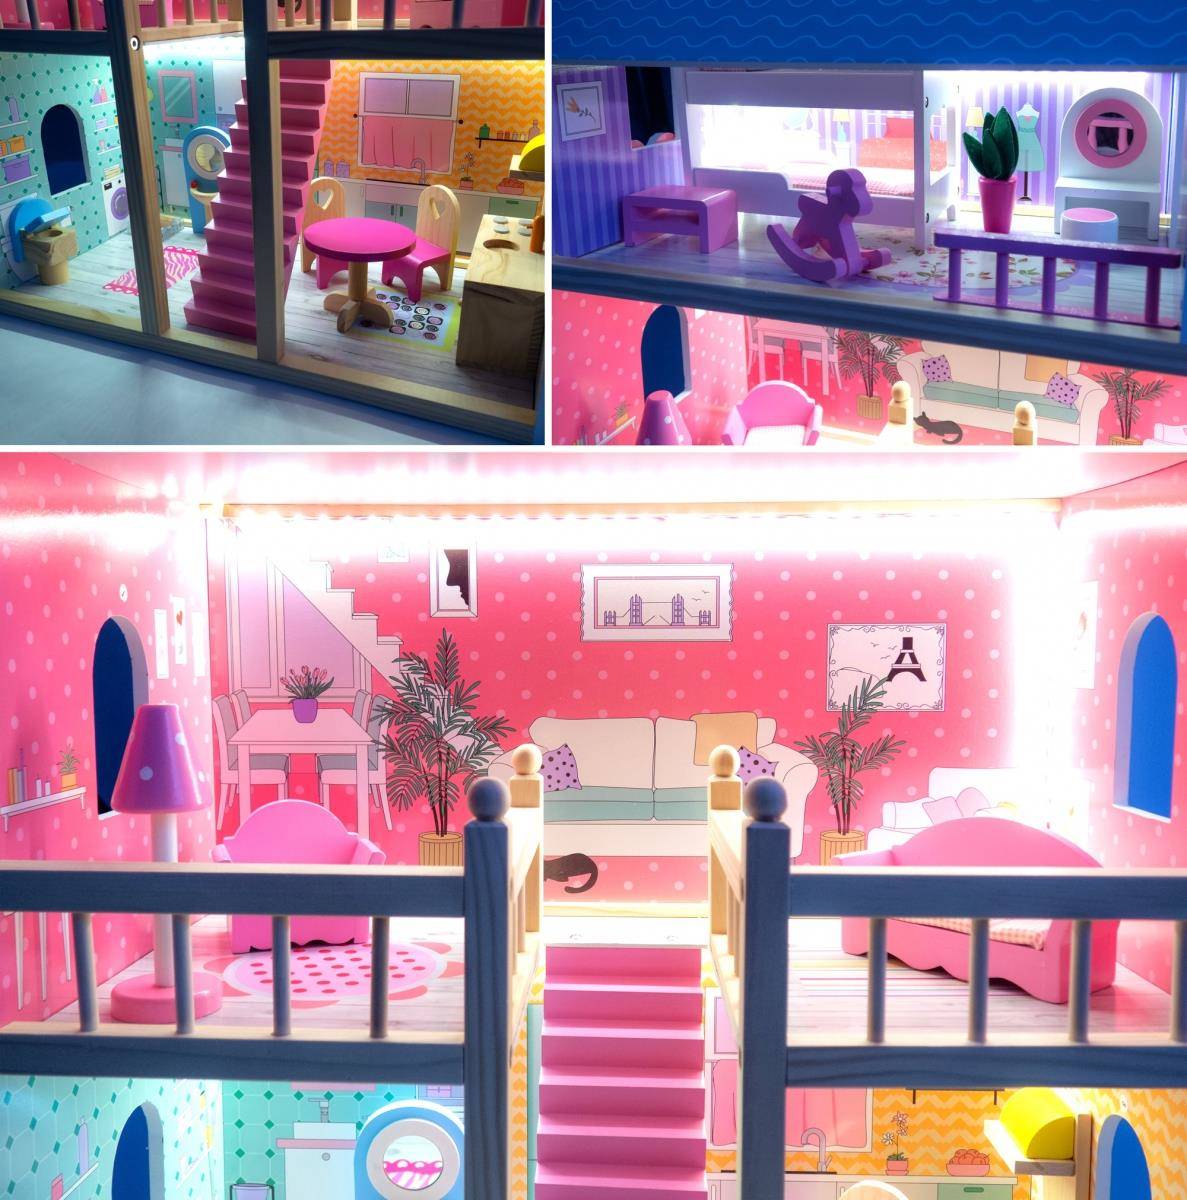 Maison Barbie, 3 poupées inclues, meubles et accessoires, 3 ans et plus